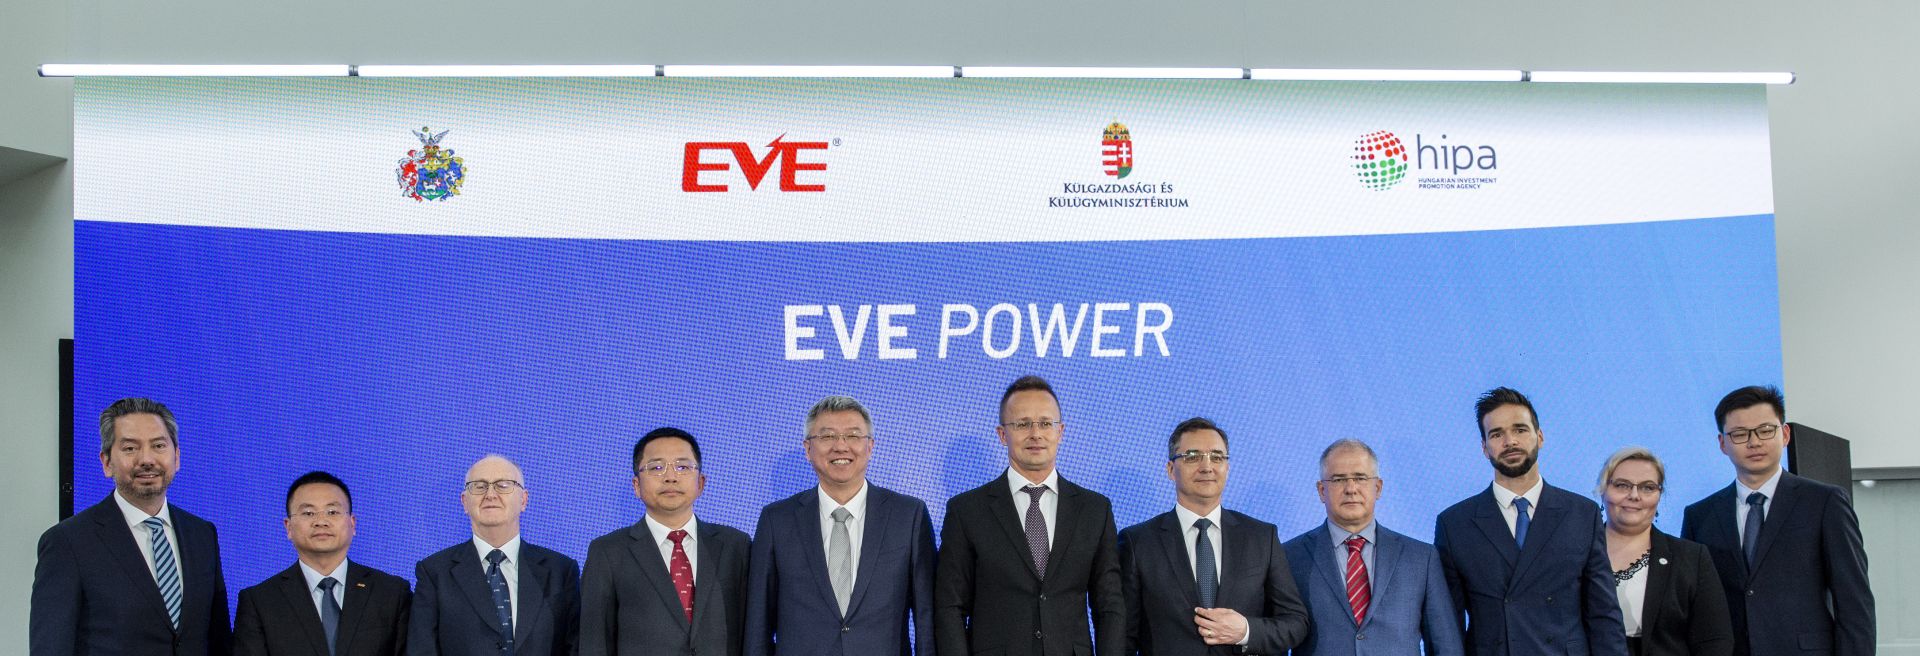 Az EVE Power a BMW-vel társul Debrecenben a szomszédos iFactory ellátására